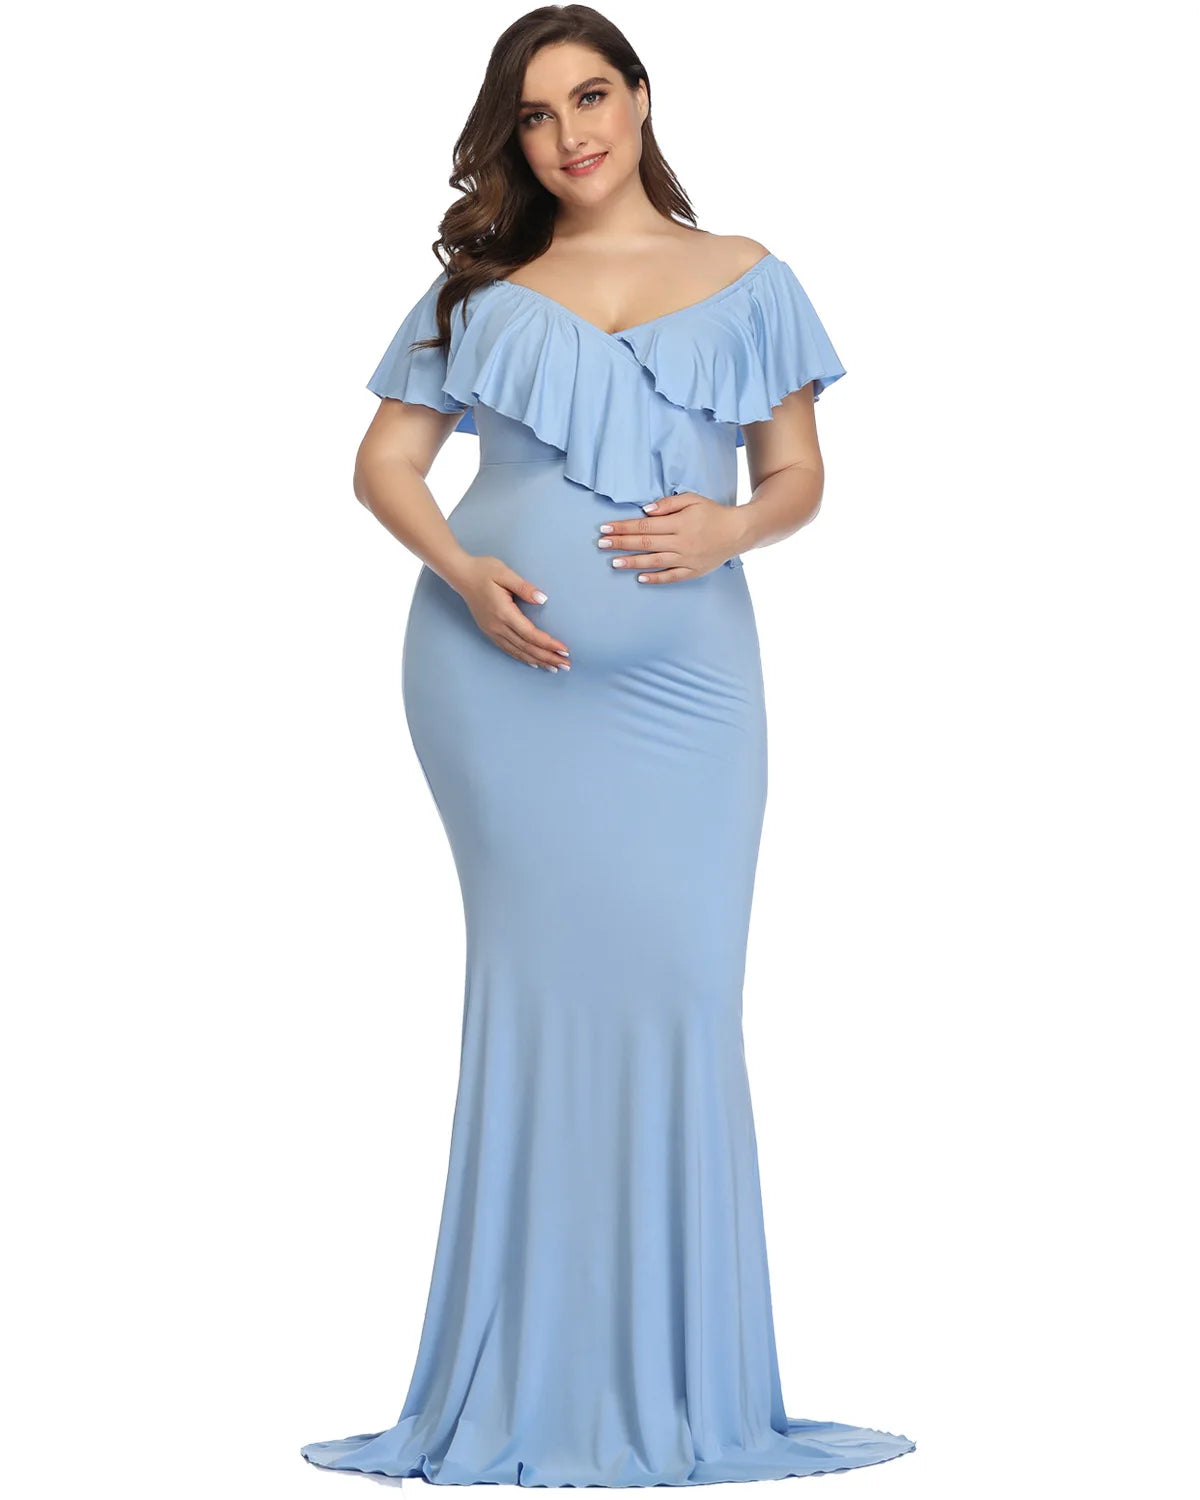 Plus Size Bohemian Maternity Photoshoot Dress blue by Baby Minaj Cruz